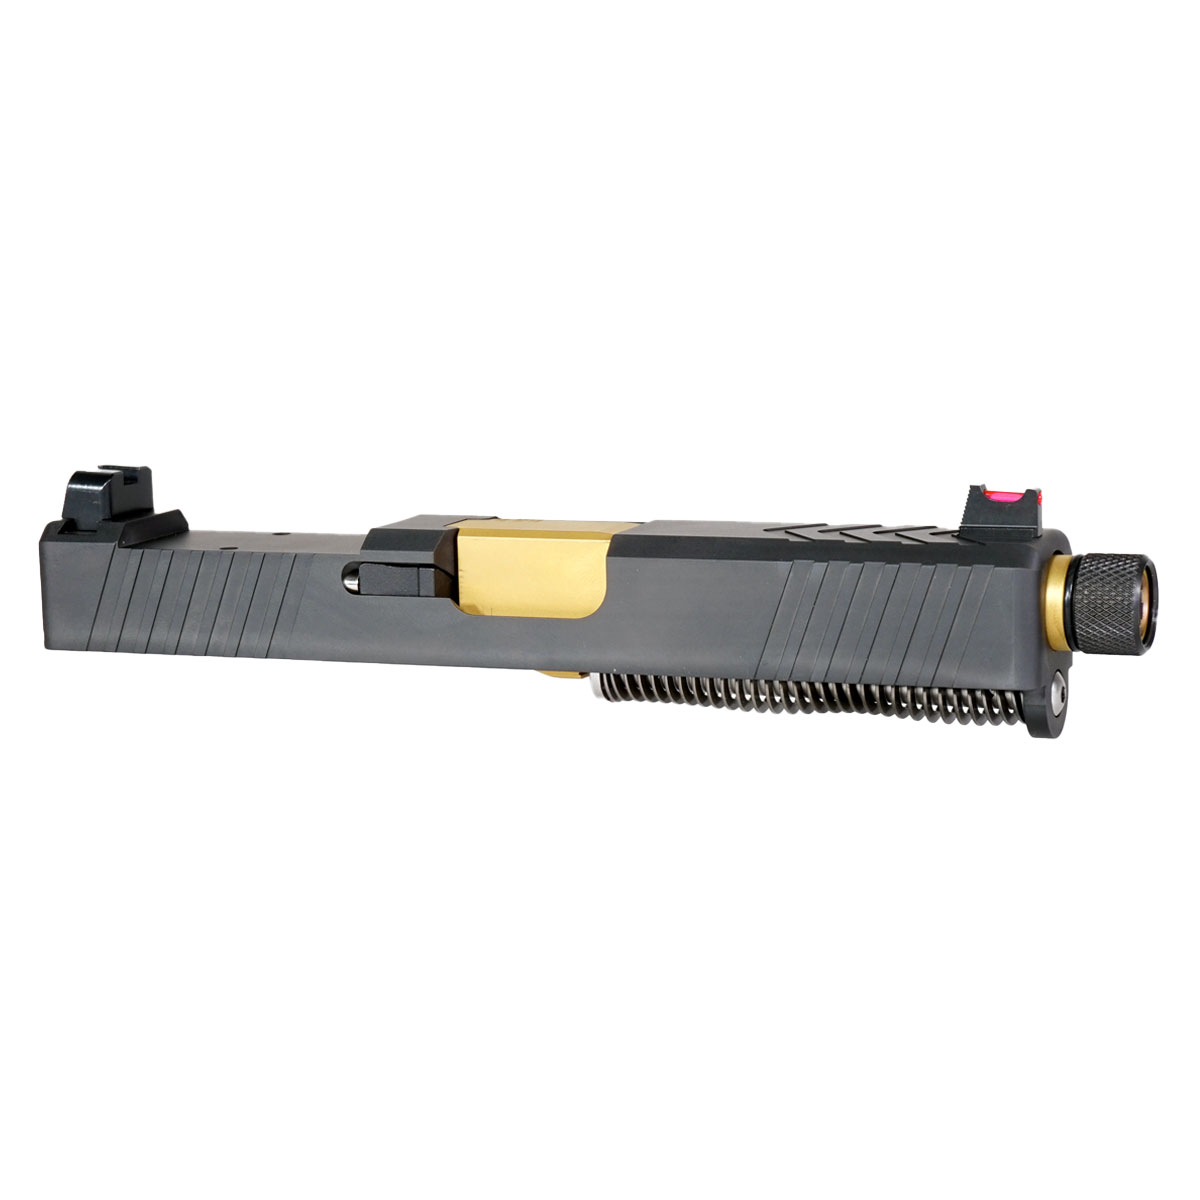 DDS 'Backmarker' 9mm Complete Slide Kit - Glock 19 Gen 1-3 Compatible